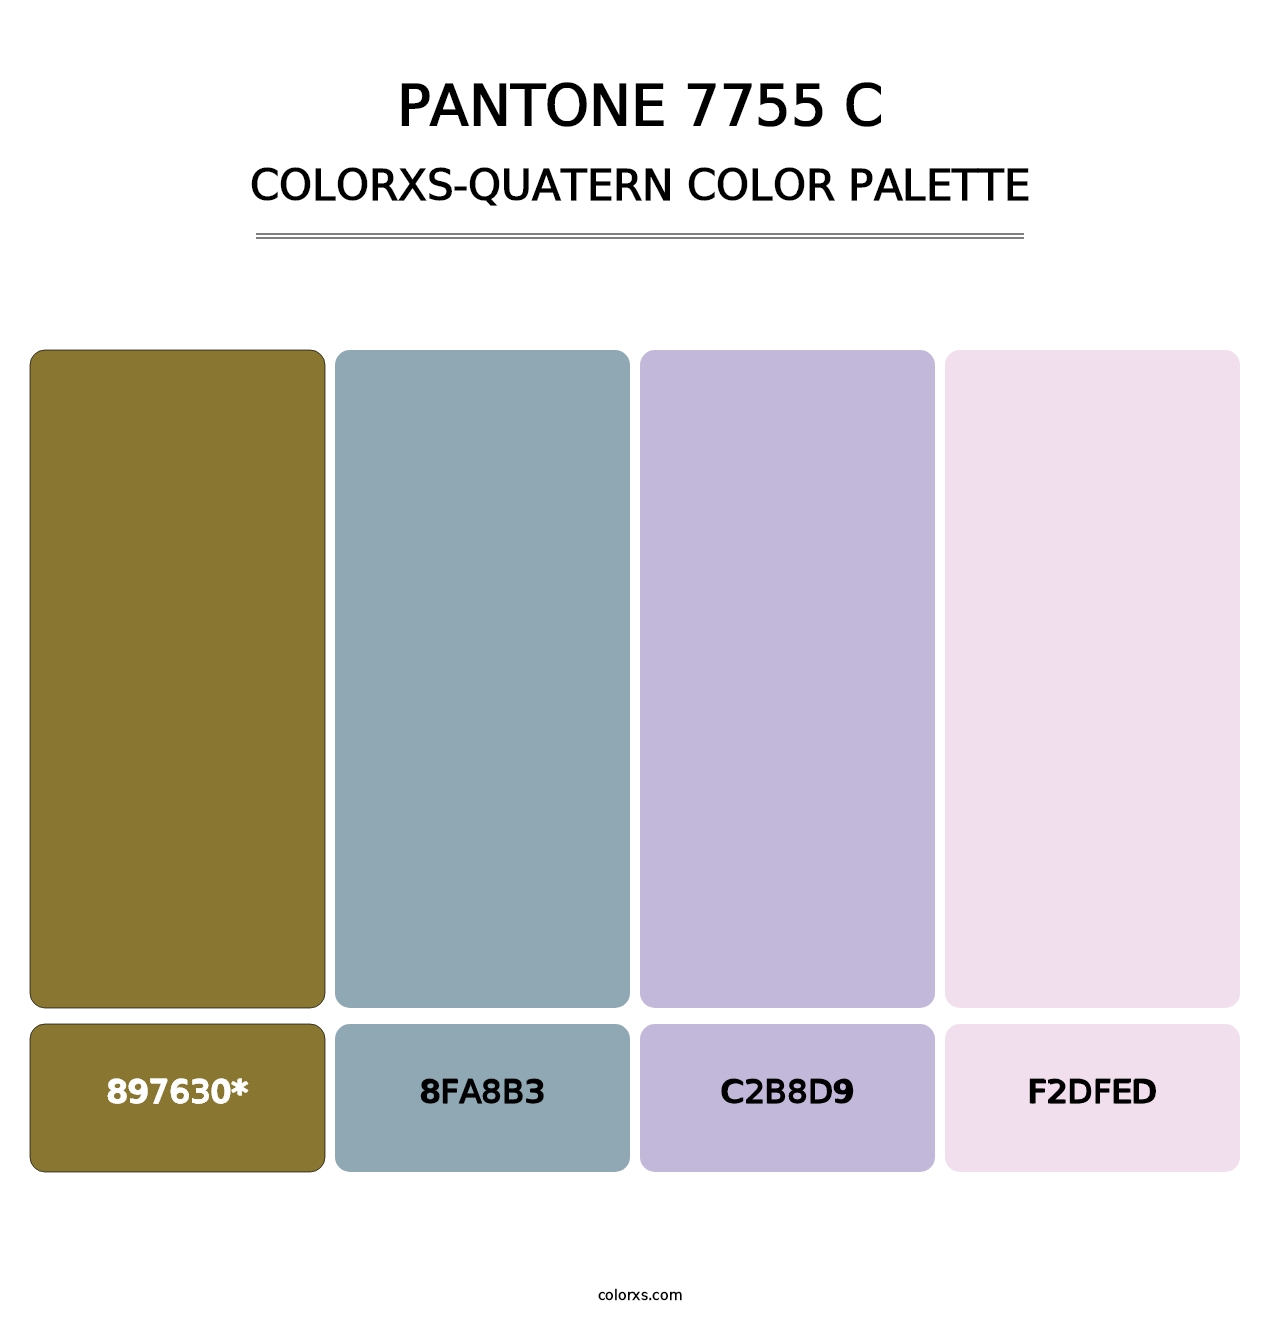 PANTONE 7755 C - Colorxs Quatern Palette